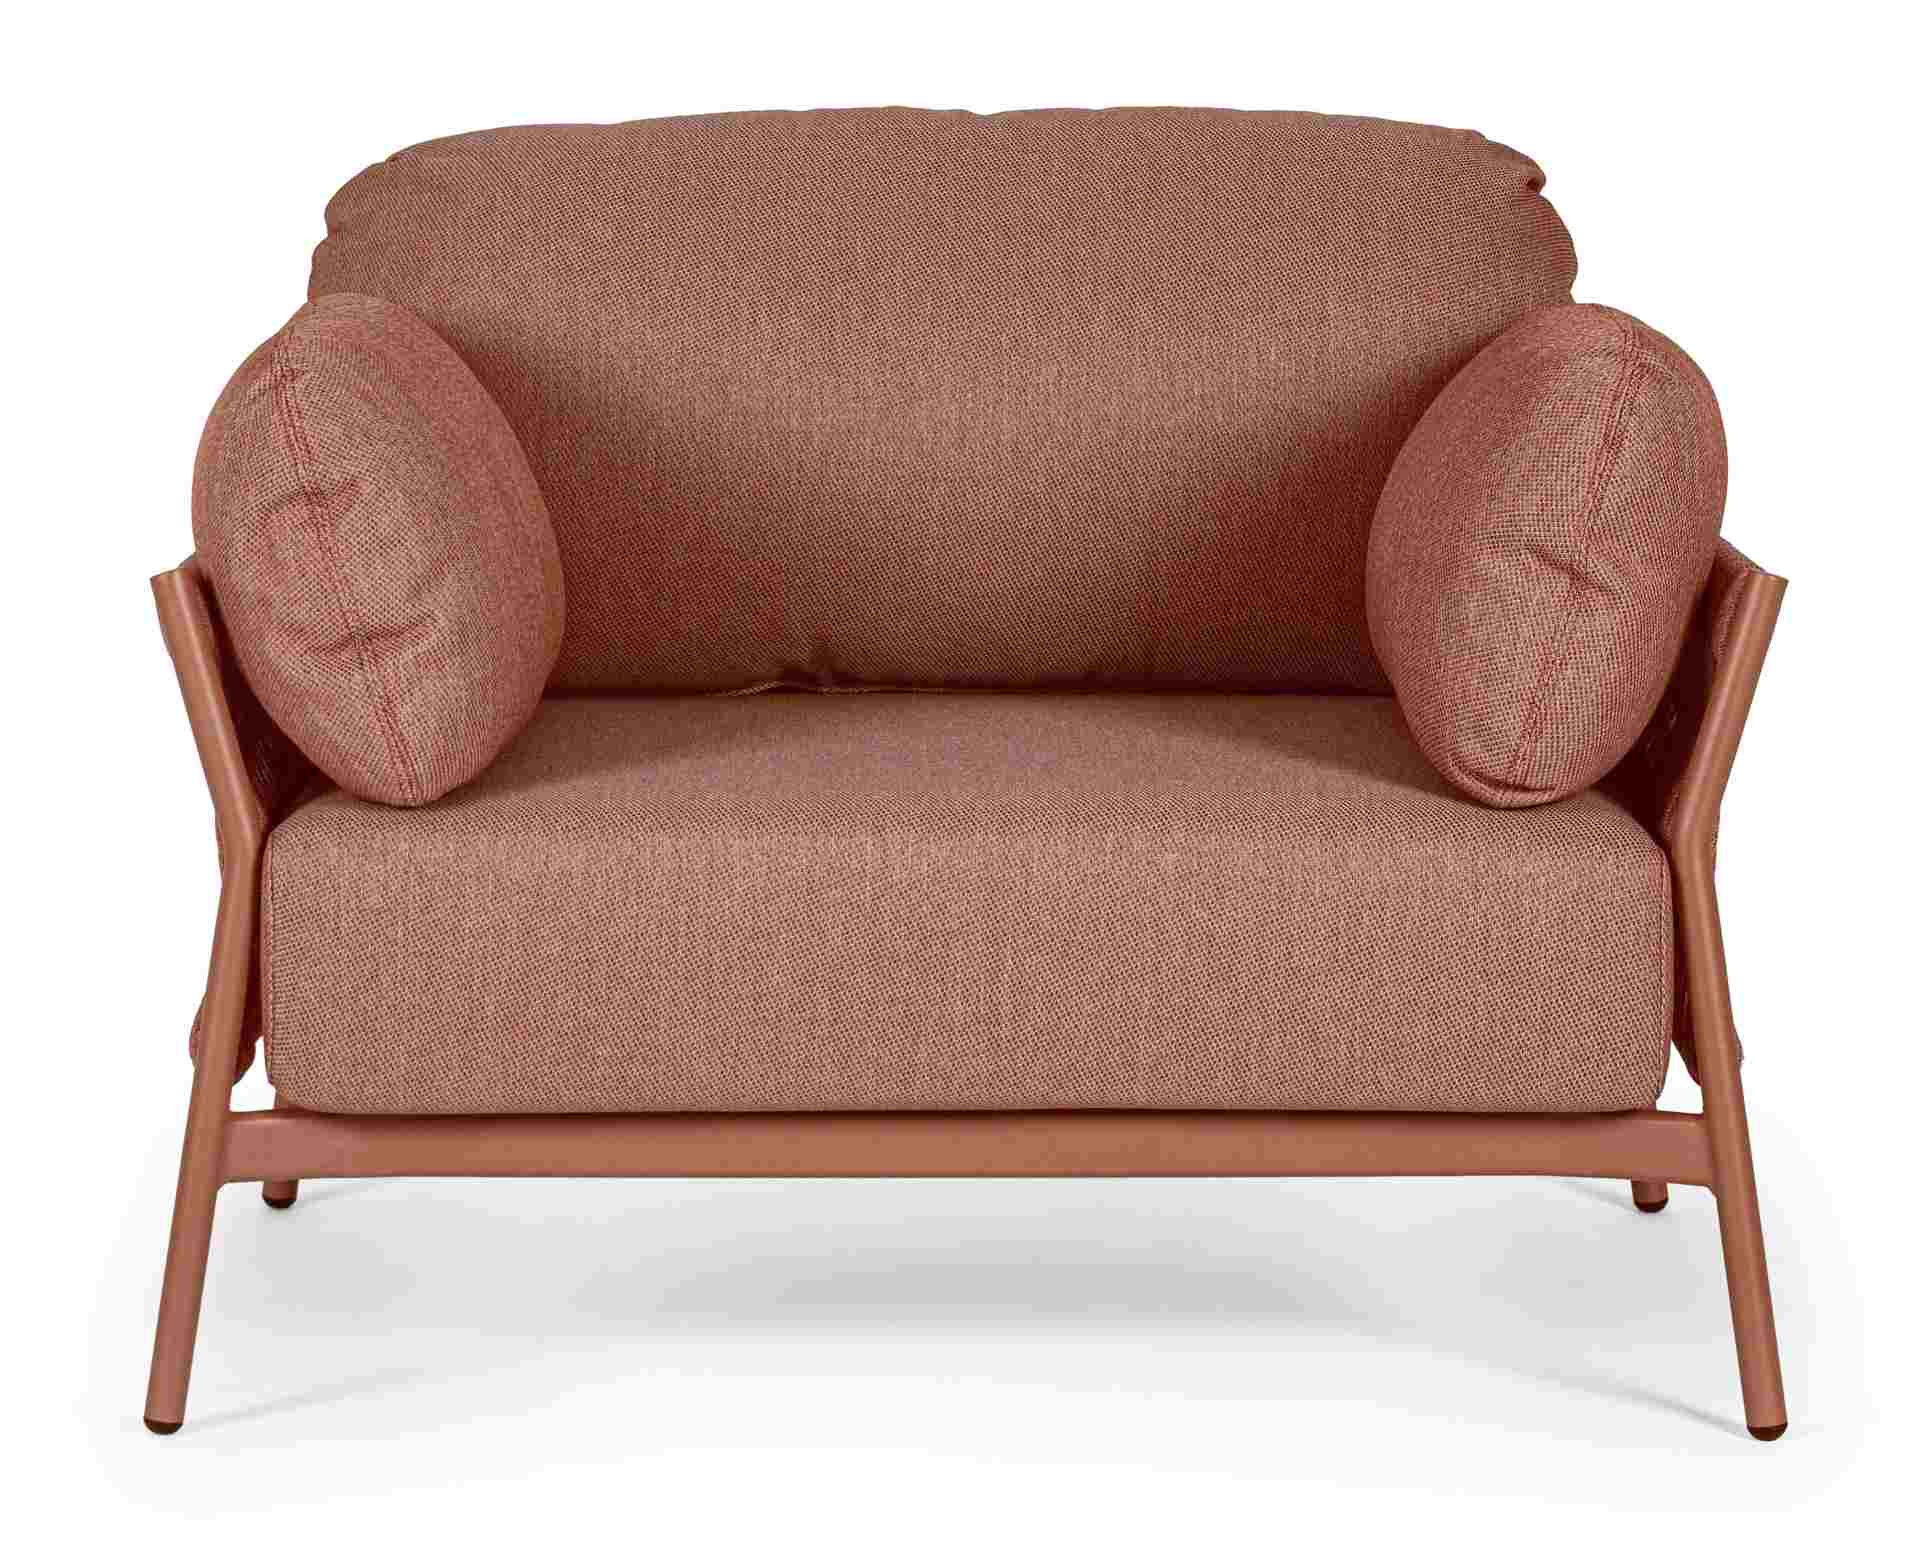 Der Gartensessel Pardis überzeugt mit seinem modernen Design. Gefertigt wurde er aus Olefin-Stoff, welcher einen roten Farbton besitzt. Das Gestell ist aus Aluminium und hat eine rote Farbe. Der Sessel verfügt über eine Sitzhöhe von 38 cm und ist für den 